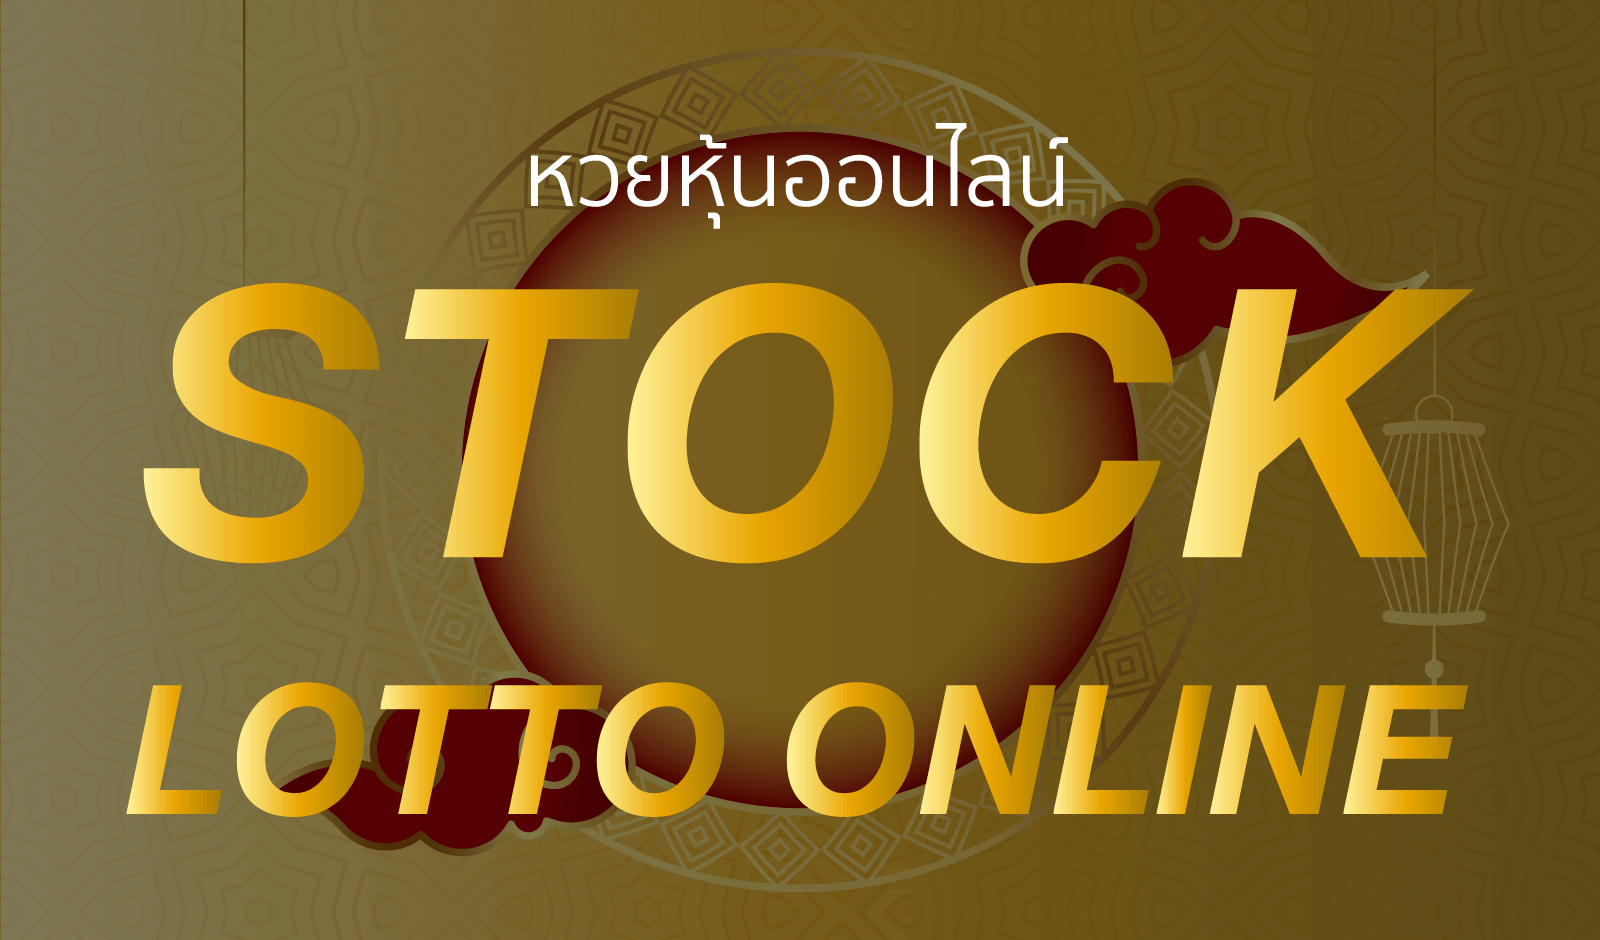 หวยหุ้นออนไลน์ stock lotto online